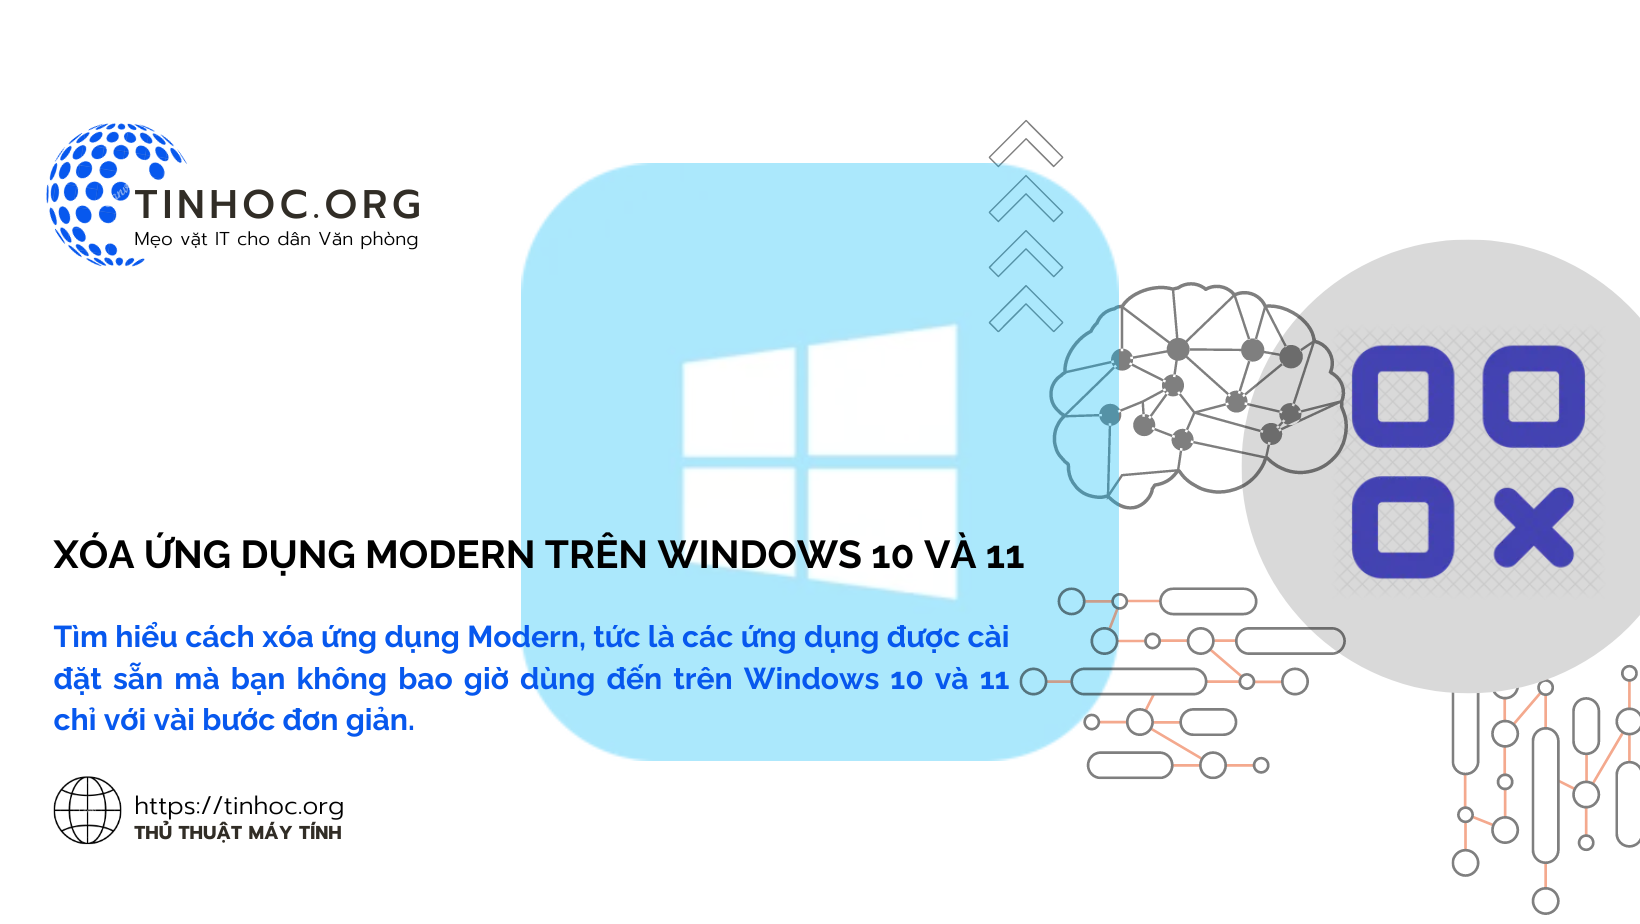 Tìm hiểu cách xóa ứng dụng Modern, tức là các ứng dụng được cài đặt sẵn mà bạn không bao giờ dùng đến trên Windows 10 và 11 chỉ với vài bước đơn giản.